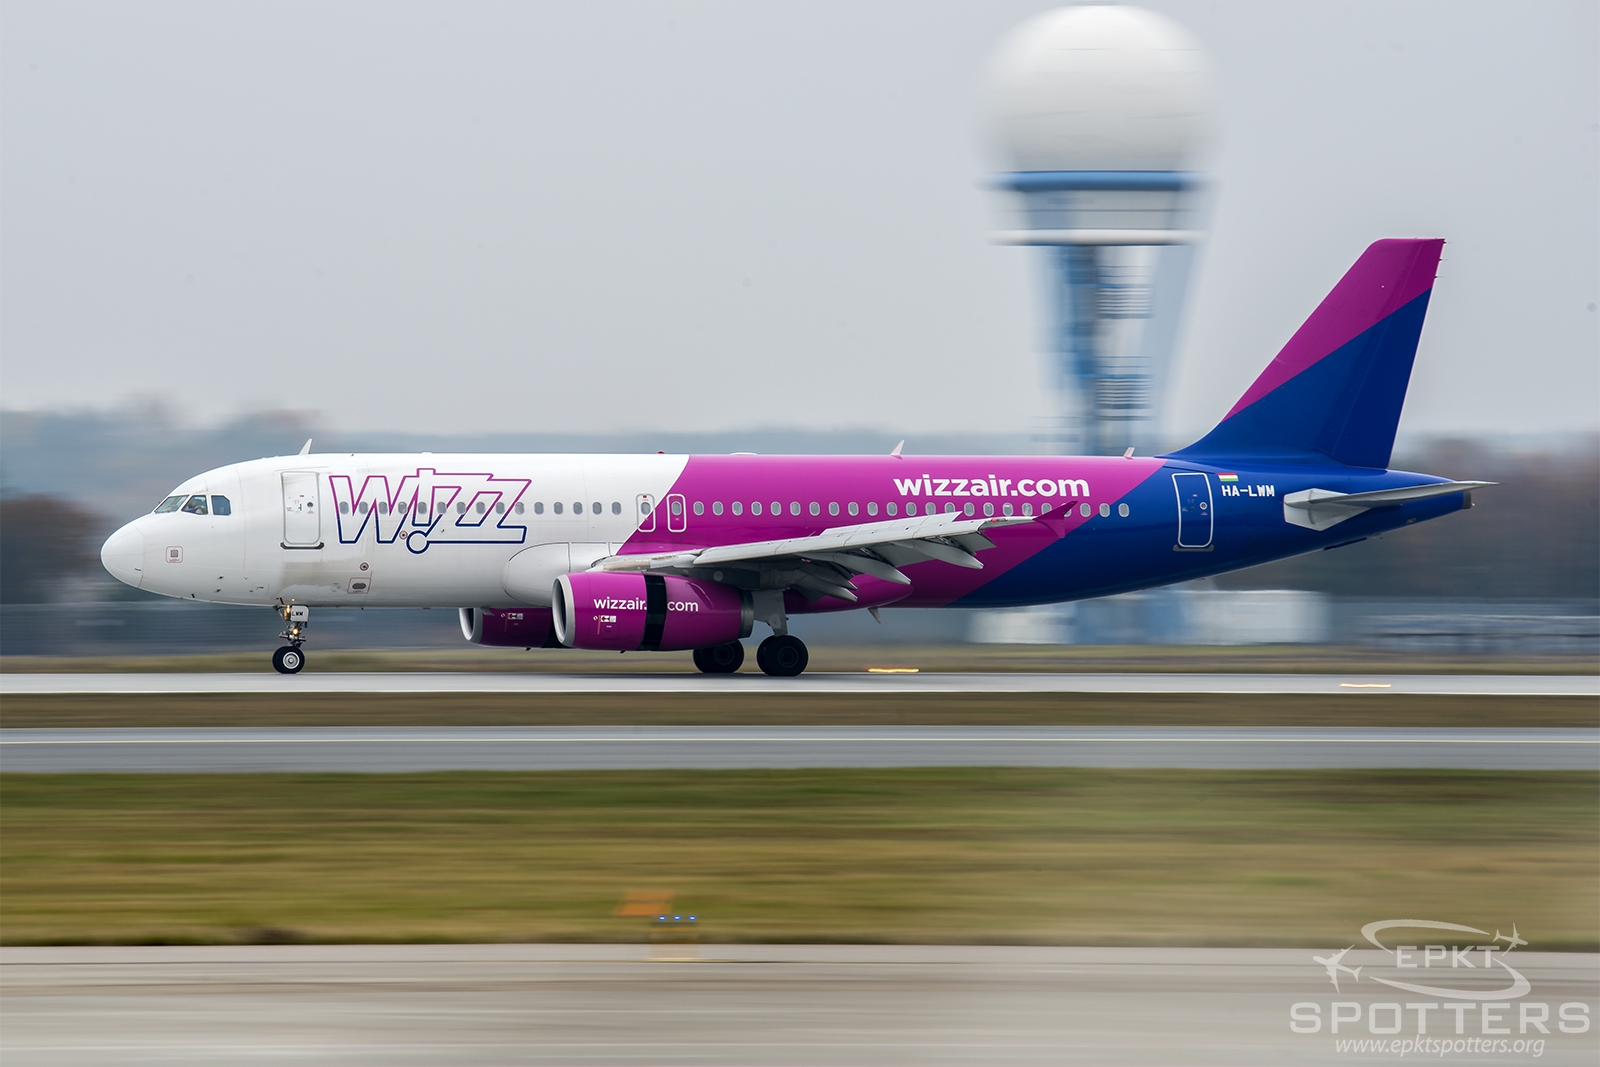 HA-LWM - Airbus A320 -232 (Wizz Air) / Pyrzowice - Katowice Poland [EPKT/KTW]